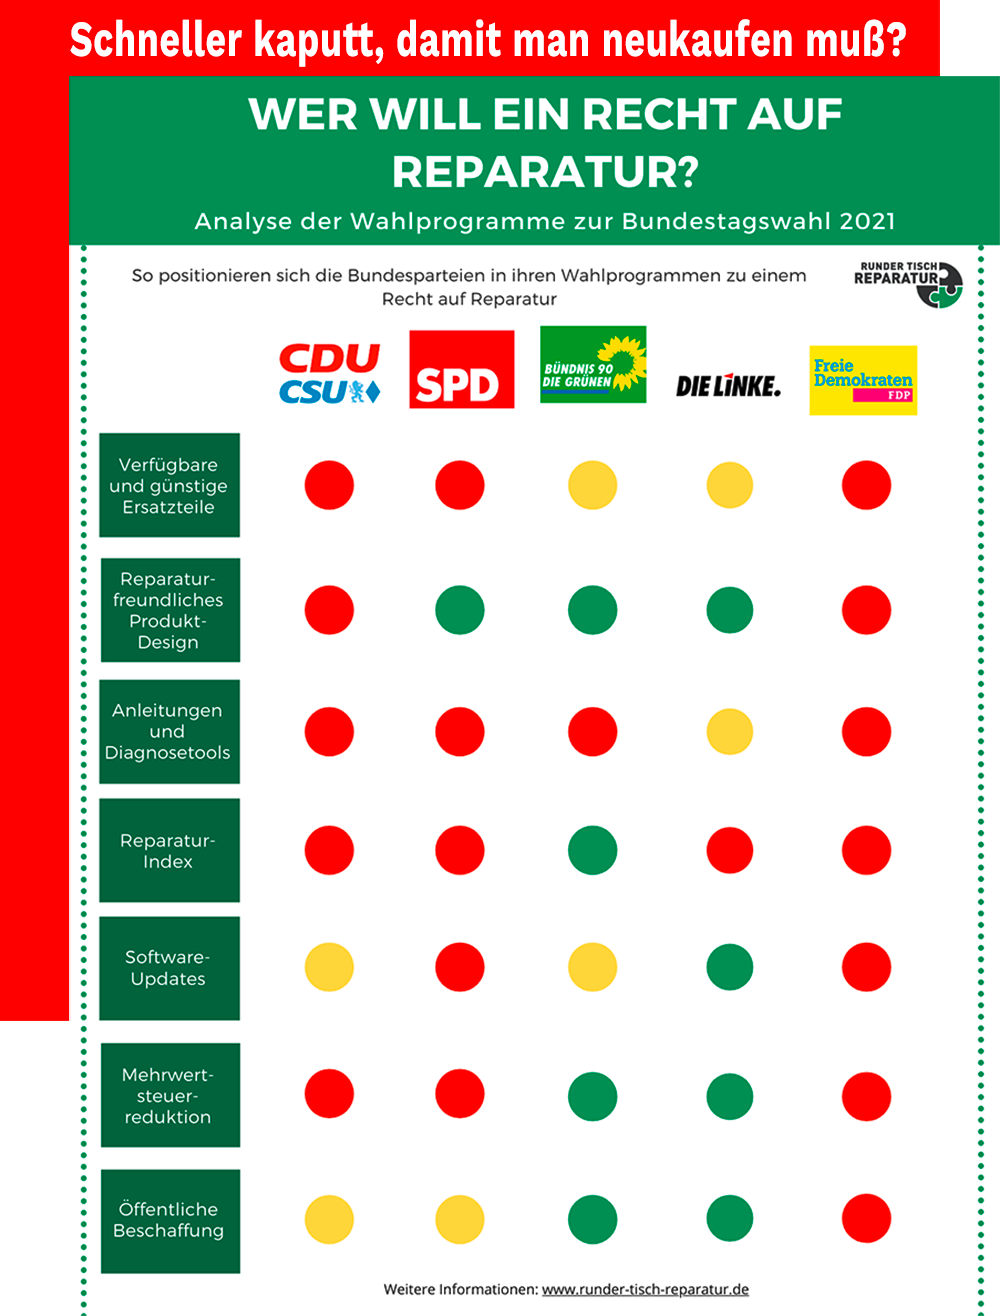 Vergleich der Parteien bei der Frage zum Recht zur Reparatur zur Bundestagswahl 2021